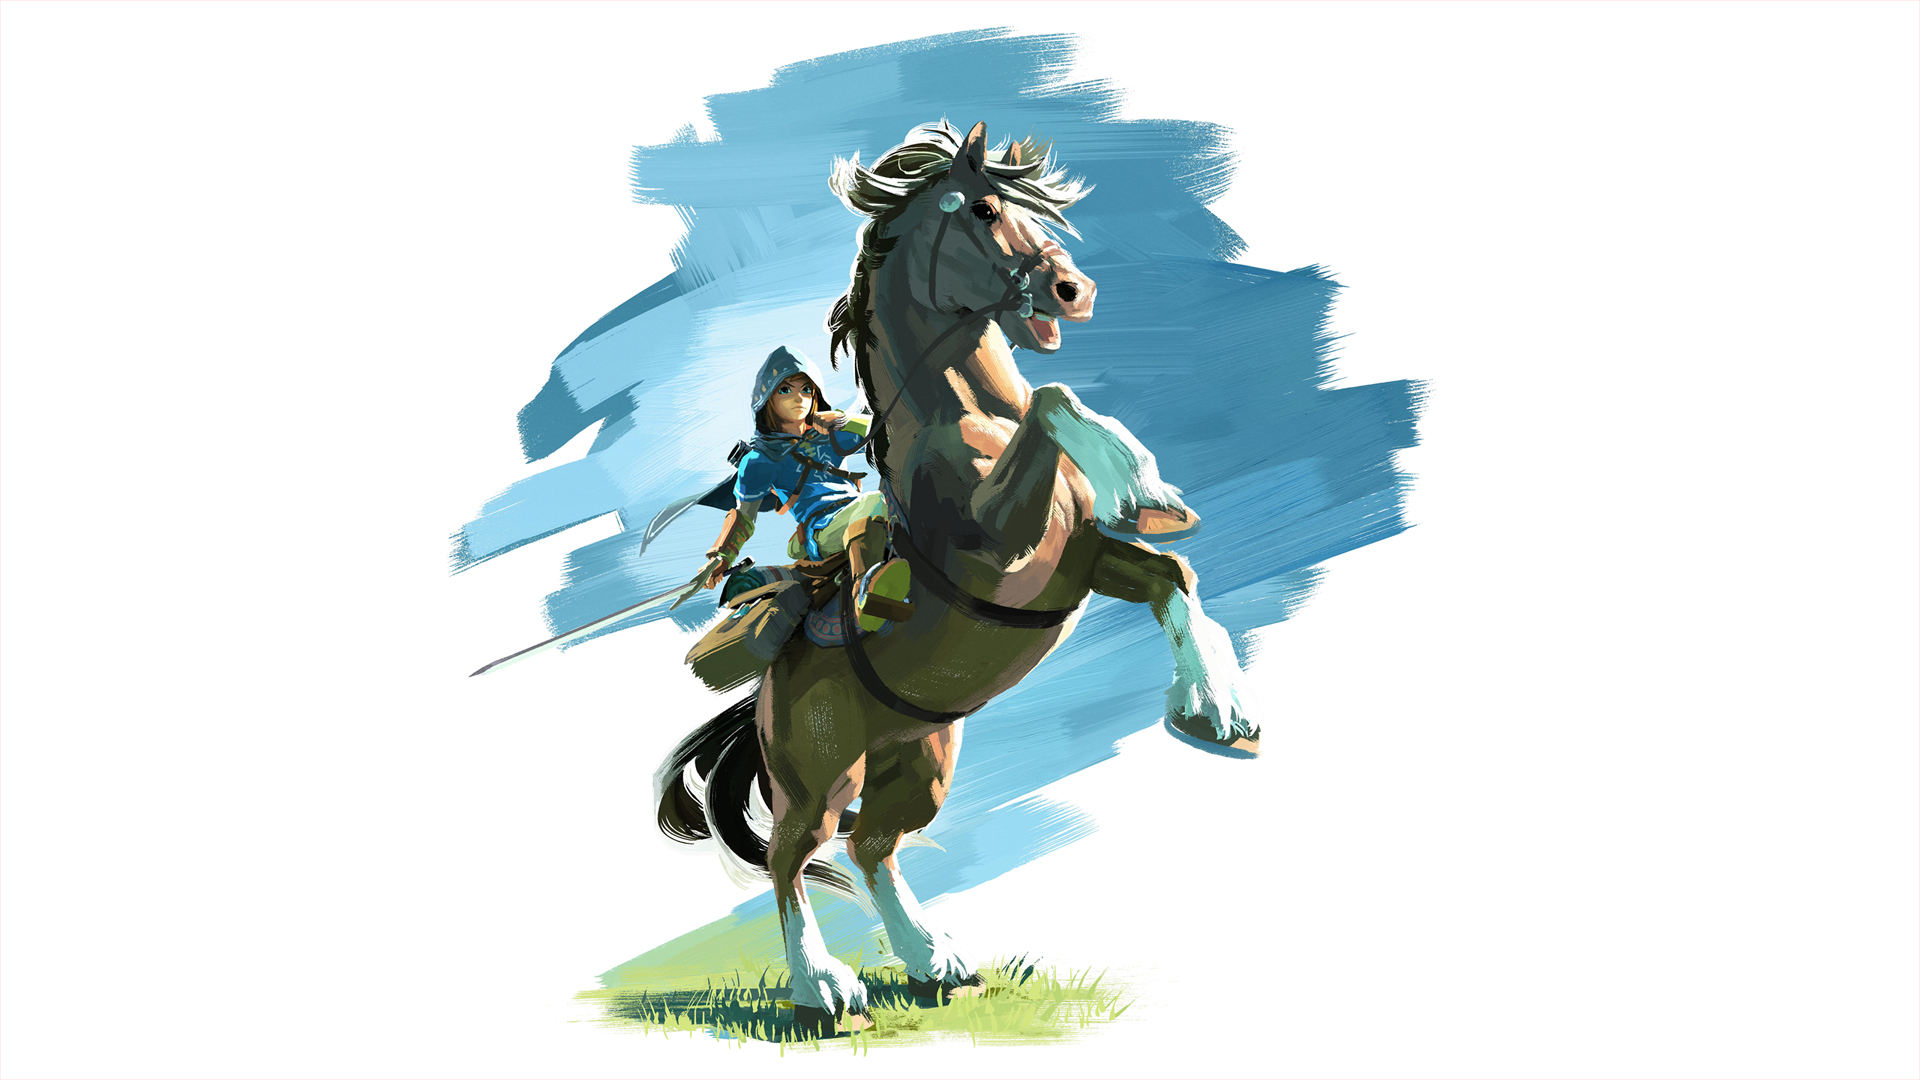 Link On Horseback Wallpaper From The Legend Of Zelda